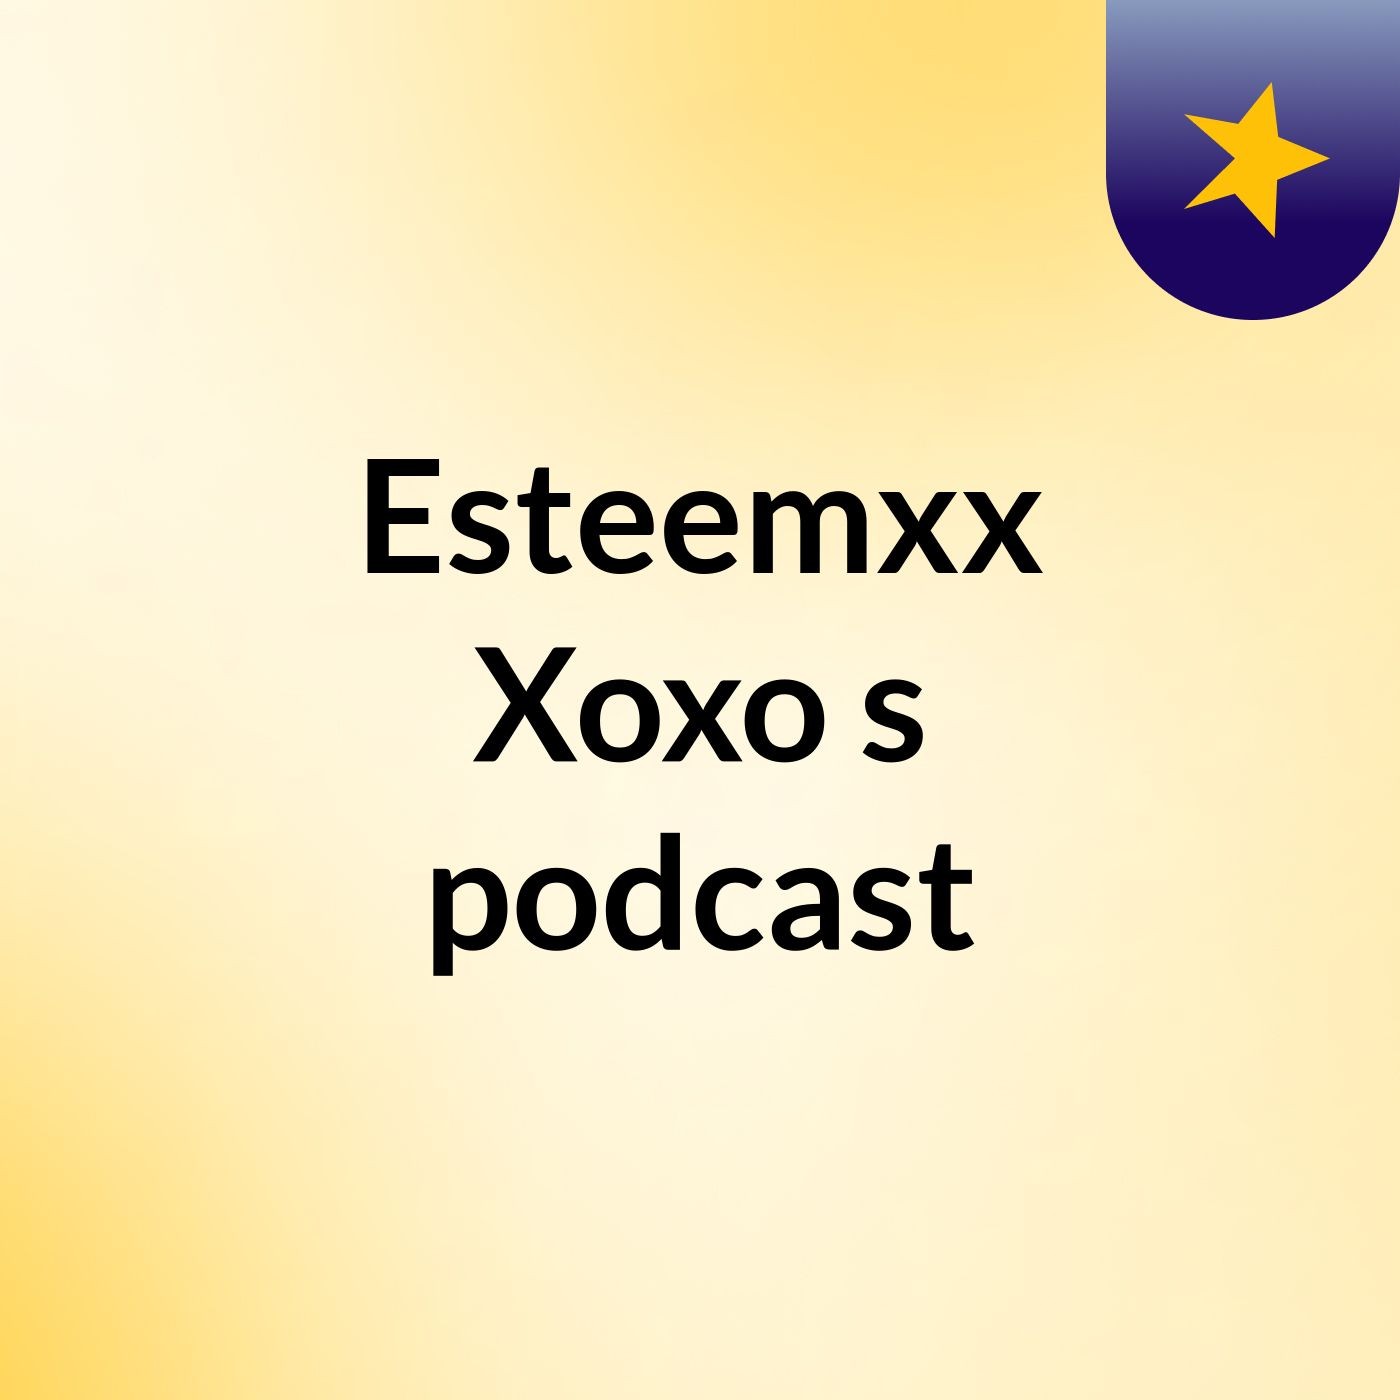 Esteemxx Xoxo's podcast